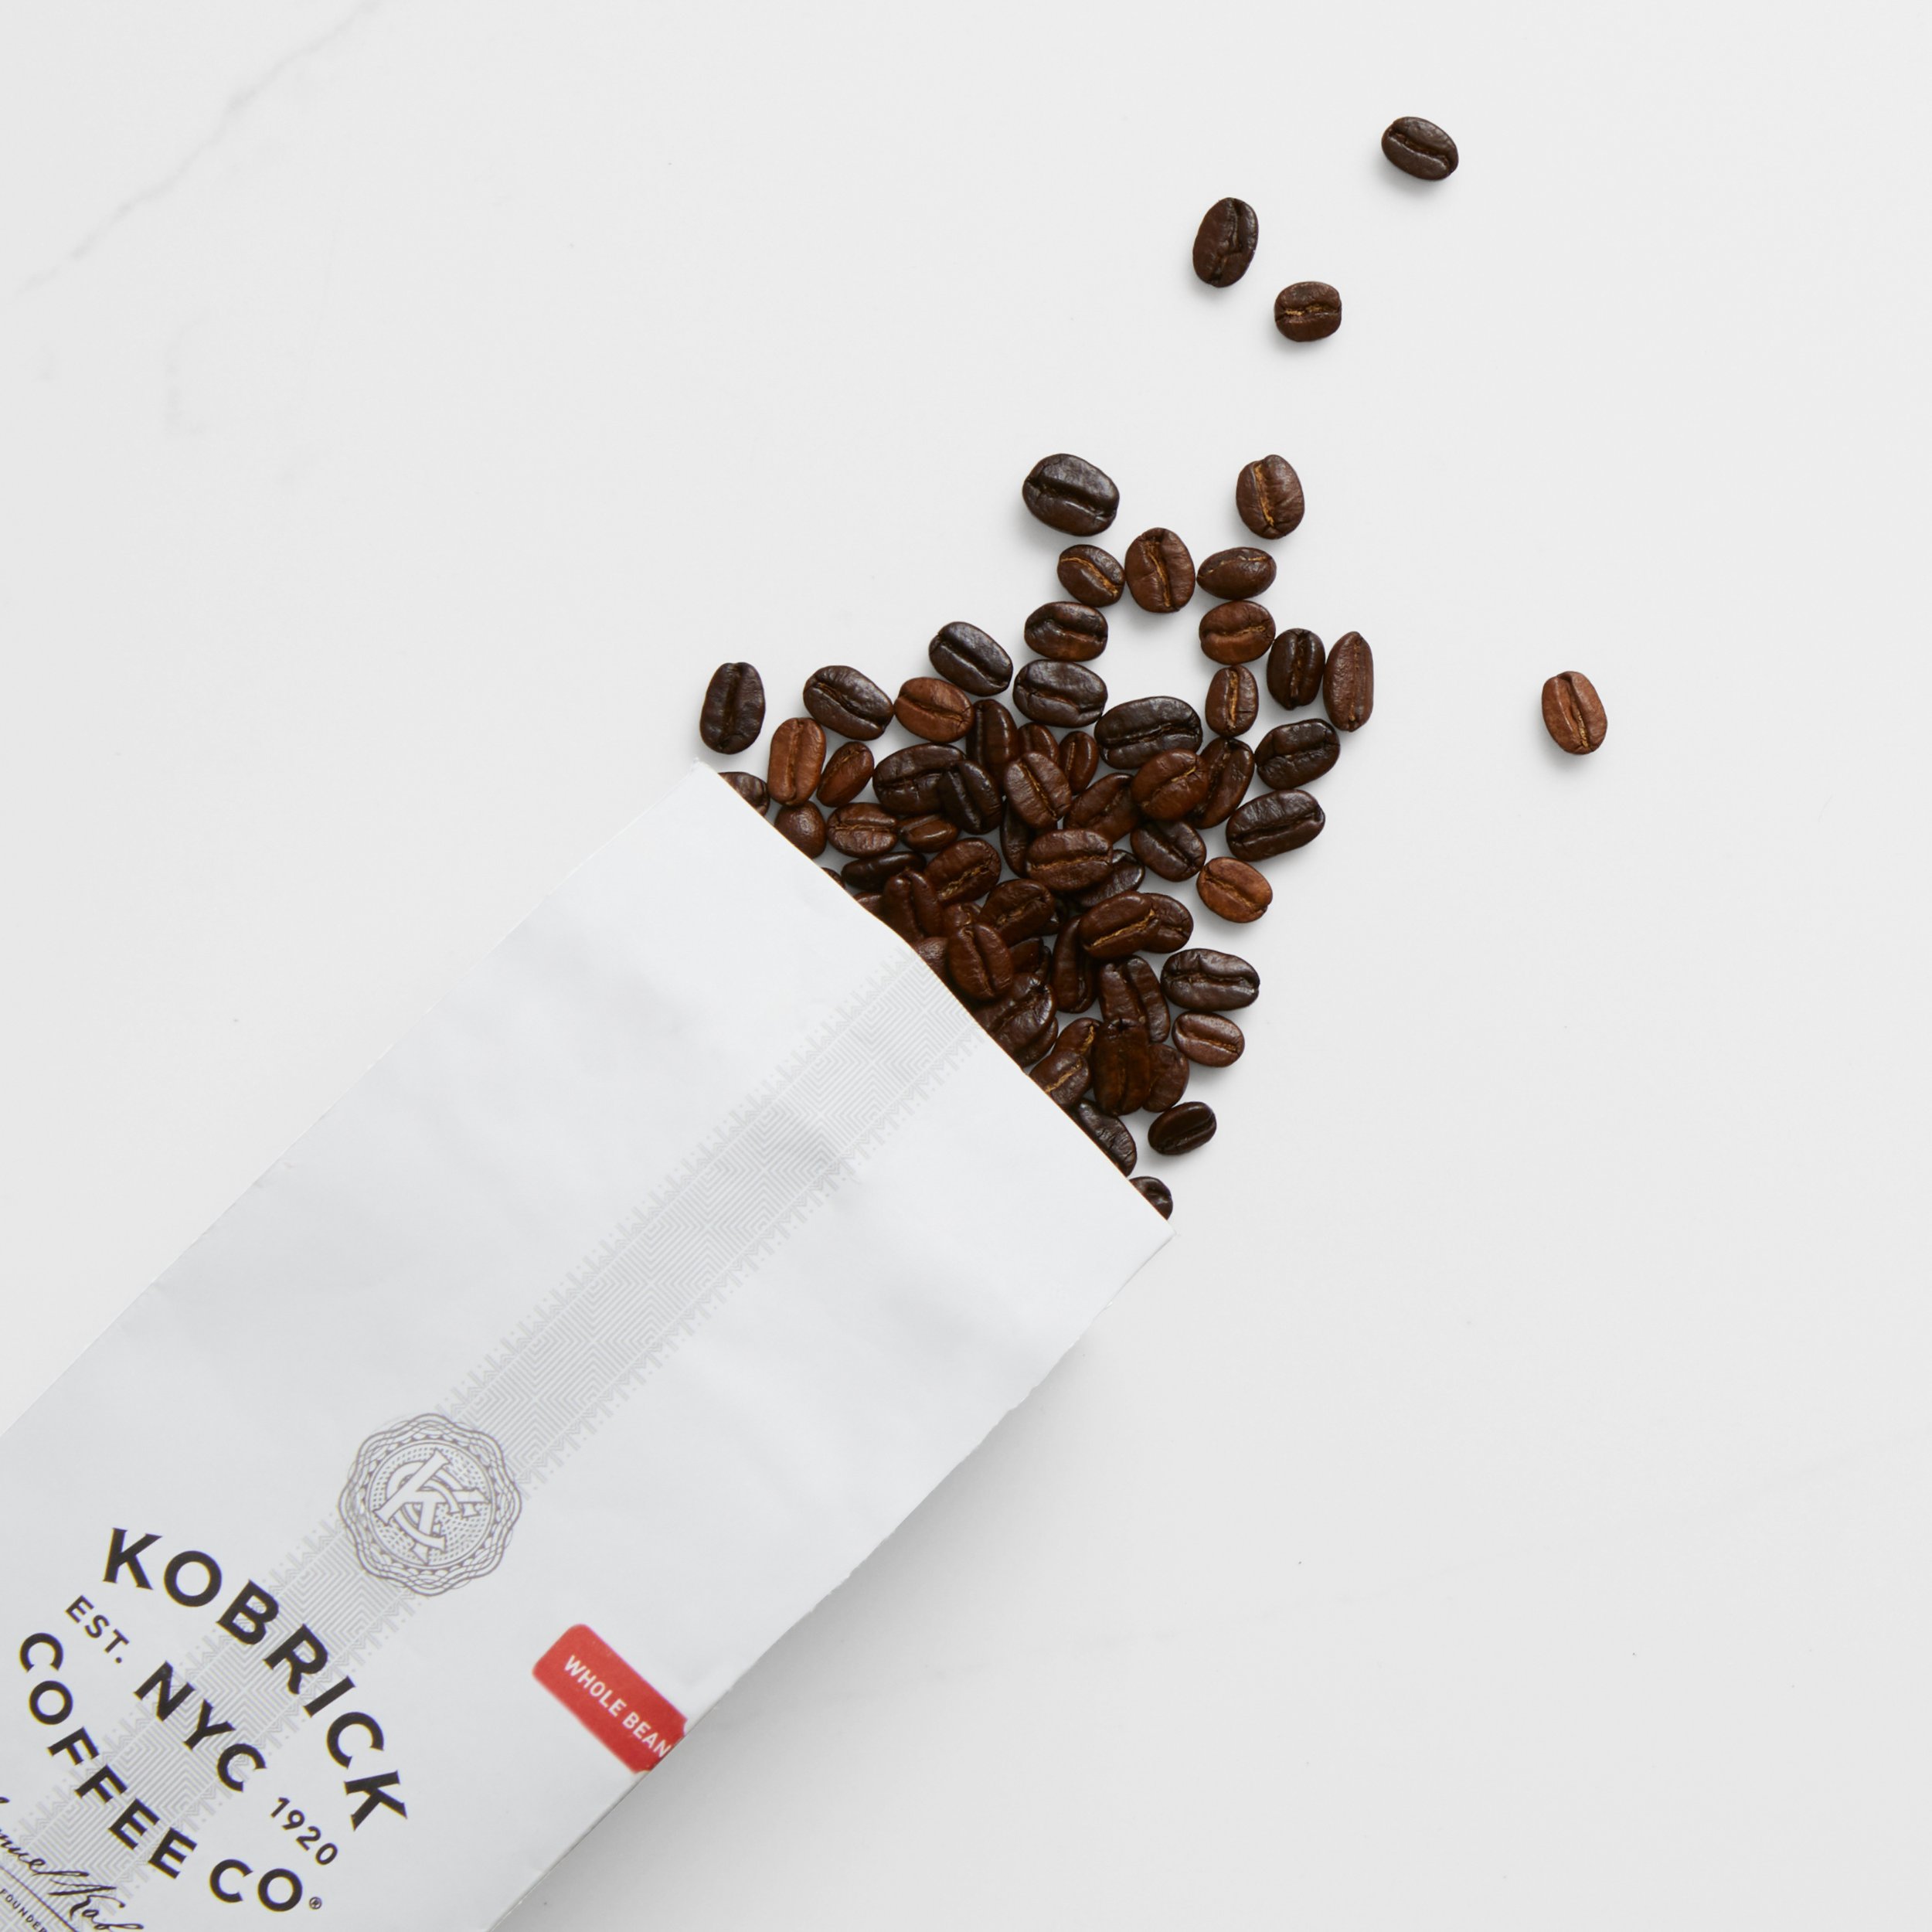 Kobrick-Coffee-Kobrick-Coffee-Packaging-Bag_Final_3.jpg